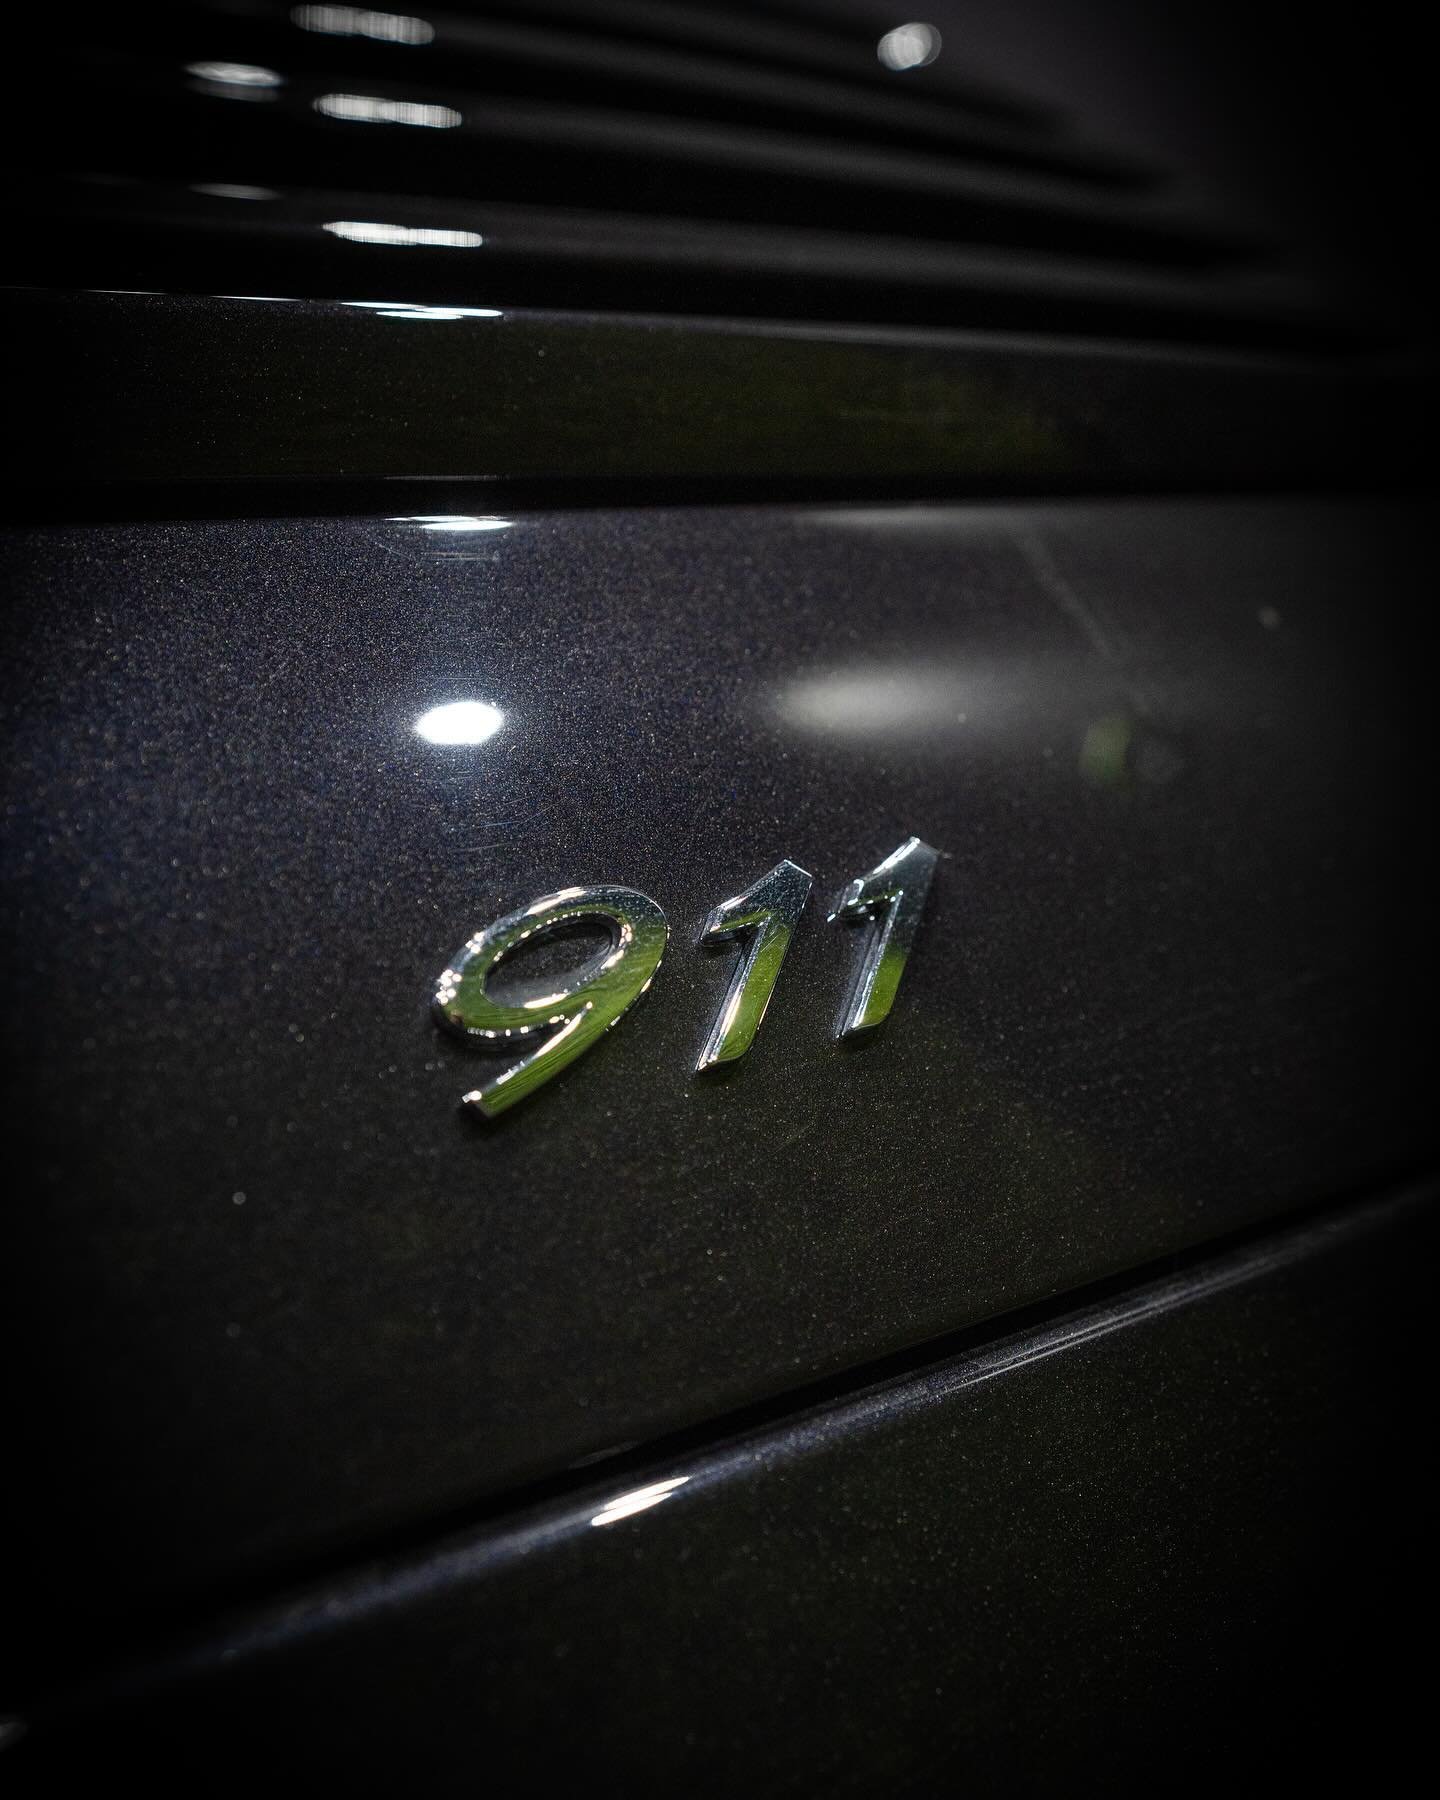 Vandaag aan de slag met deze prachtige Porsche 911 Black Edition 🪄
&bull;
#cardetailing #autodetailing #detailing #autoverzorging #autodetailer #polijsten #glansherstel #detailerslife #autocar #carcare #cleancar #shinycar #detailingworld #cardetaili